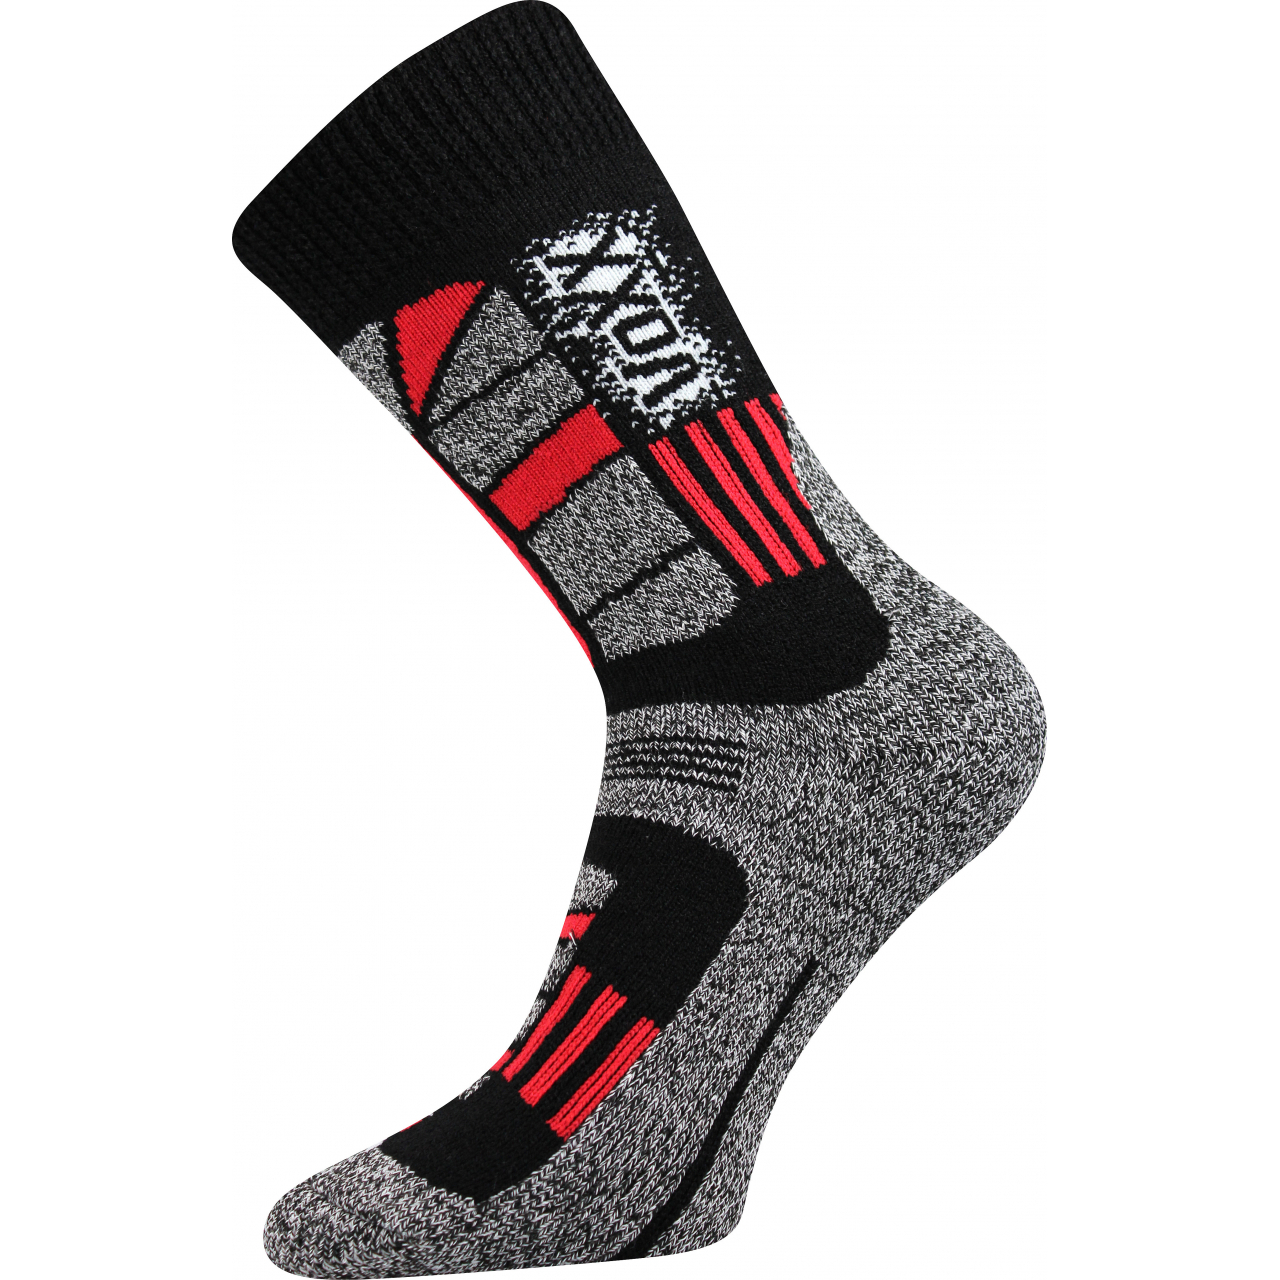 Ponožky unisex termo Voxx Traction I - černé-červené, 47-50